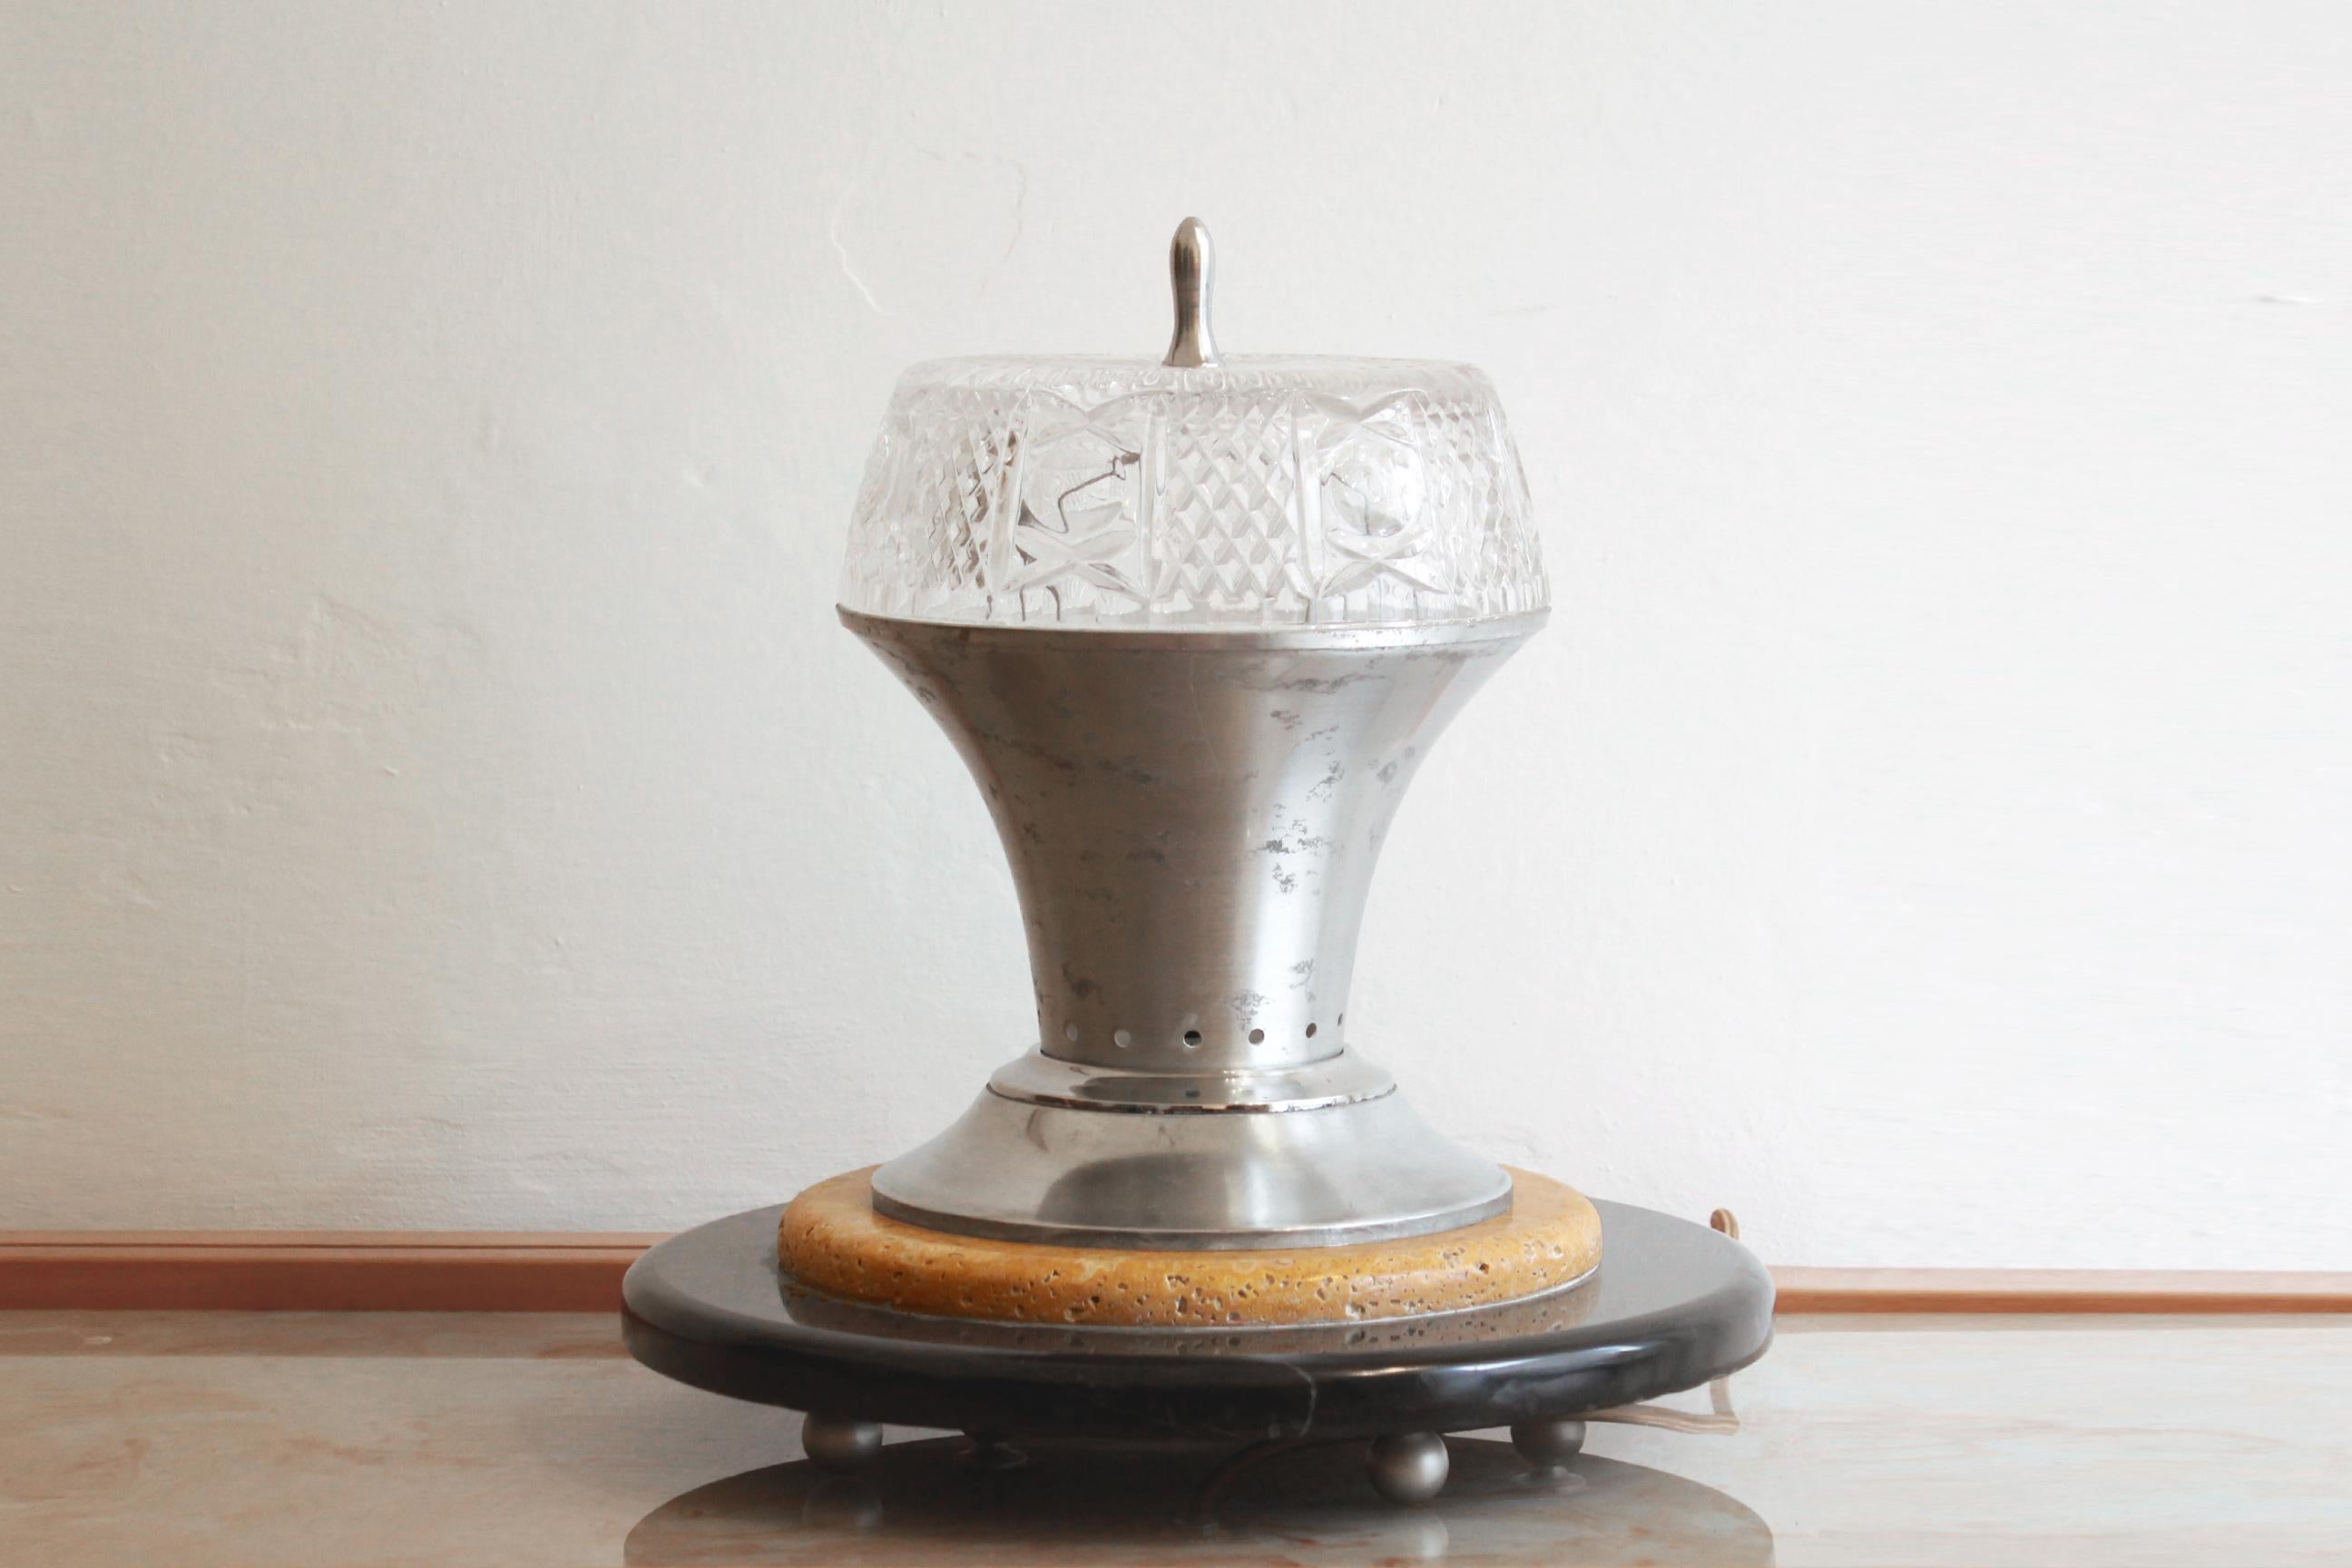 1Marmor-Tischlampe, Satz mit zwei Lampen, Italien 1940er Jahre
940er Jahre Vintage Tischlampen mit Marmorsockel. Reiner Regency-Stil der 1940er Jahre, mit einem zweifarbigen runden Sockel (gelber Travertinmarmor und schwarzer Marquino), mit den